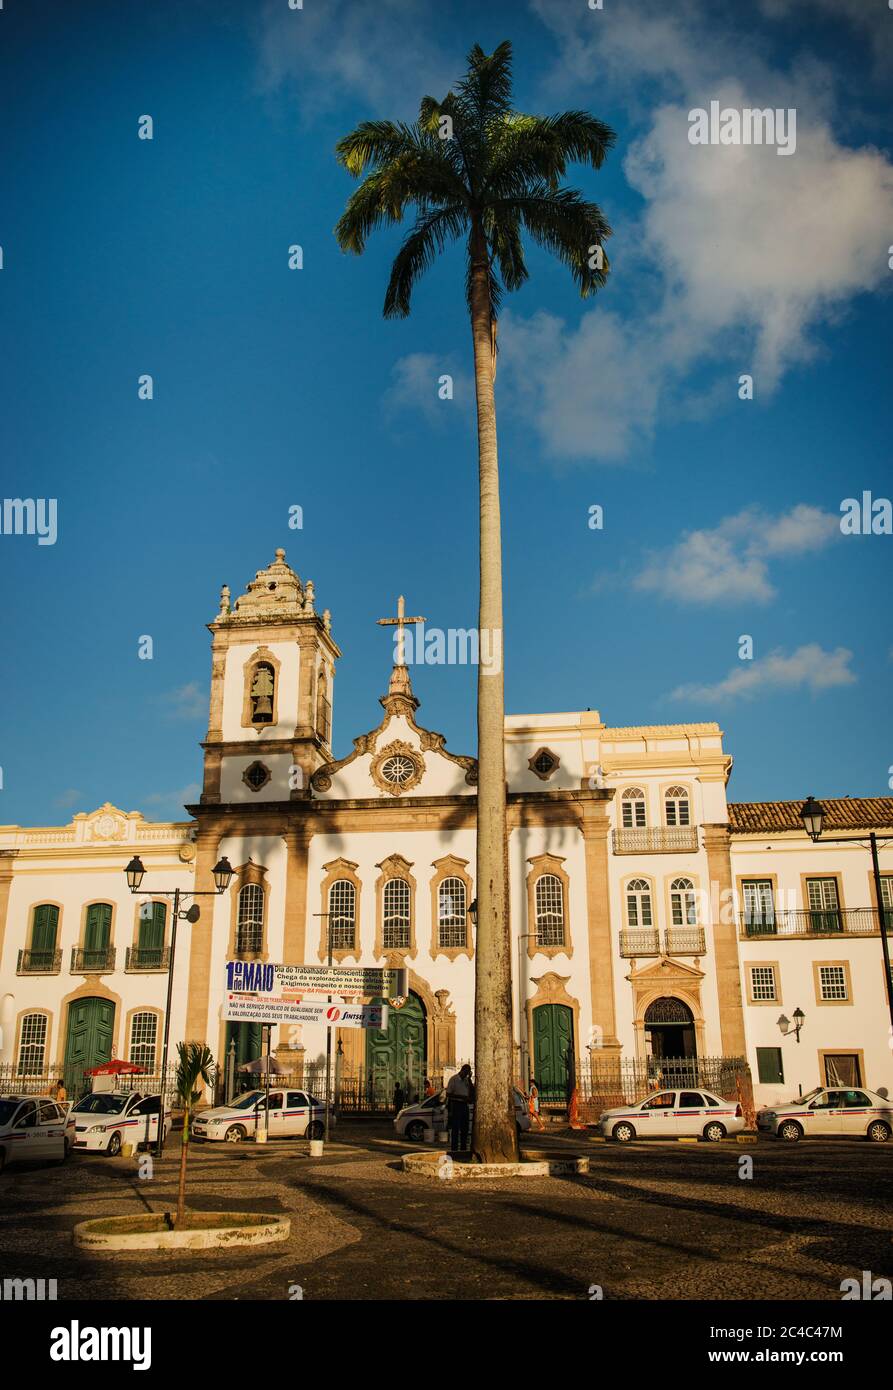 Cour et église de Nosso Senhor do Bonfim, Salvador da Bahia, Brésil, Amérique du Sud Banque D'Images